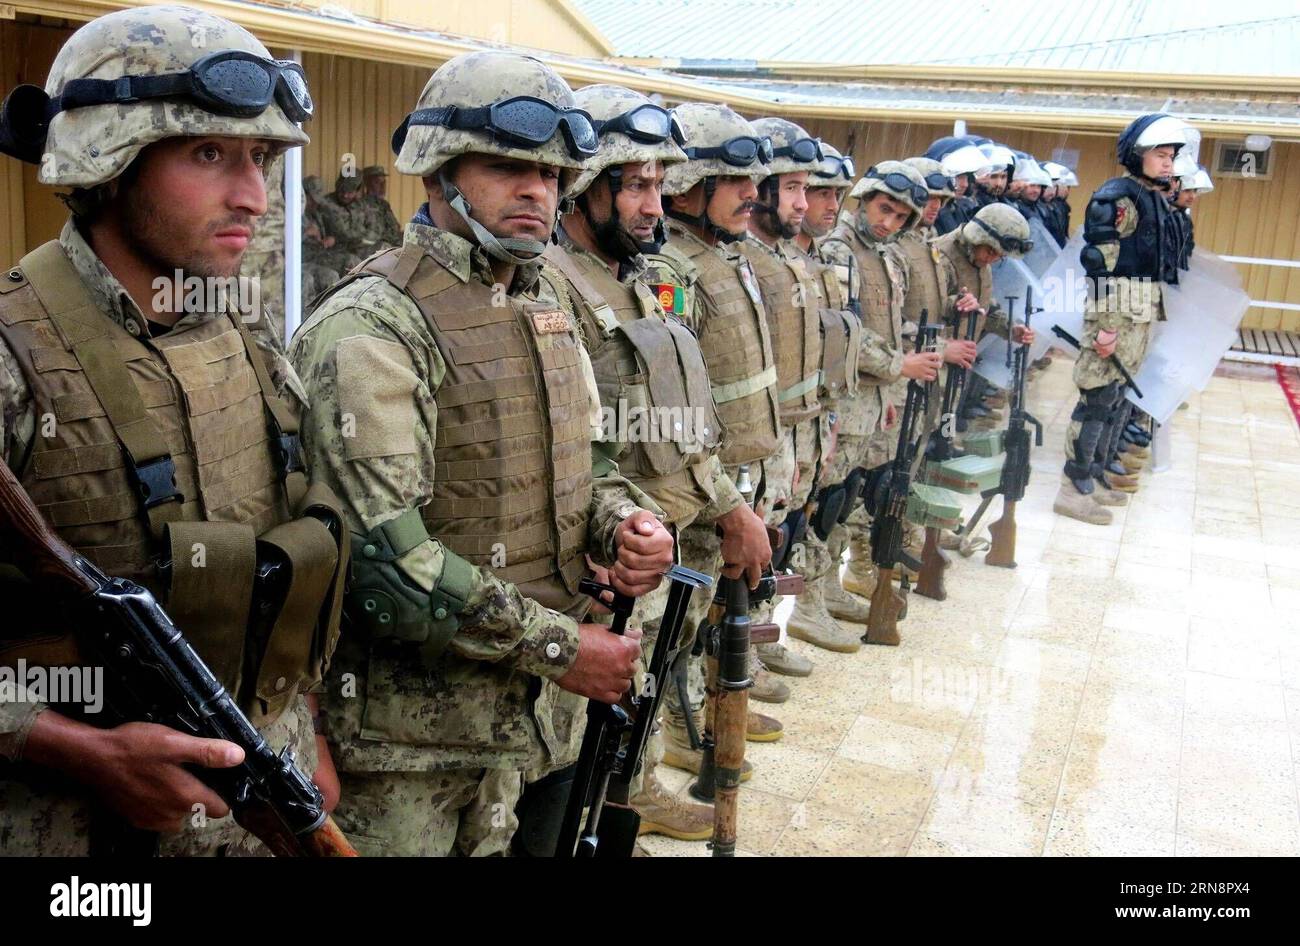 (151102) - BALKH, 2 novembre 2015 - i poliziotti afghani partecipano a un'esercitazione militare a Mazar-e-Sharif, capitale della provincia settentrionale di Balkh, Afghanistan, 2 novembre 2015. Le autorità afghane hanno recentemente accelerato la formazione delle forze di sicurezza, dal 1° gennaio di quest'anno la polizia e l'esercito del paese hanno assunto tutte le accuse di sicurezza dalle forze NATO e statunitensi. ) AFGHANISTAN-BALKH-FORMAZIONE DI POLIZIA Azorda PUBLICATIONxNOTxINxCHN Balkh 2 novembre 2015 poliziotti afghani partecipano a un'ESERCITAZIONE militare a Mazar e Sharif capitale della provincia settentrionale di Balkh in Afghanistan 2 novembre 2015 autorità afghane h Foto Stock